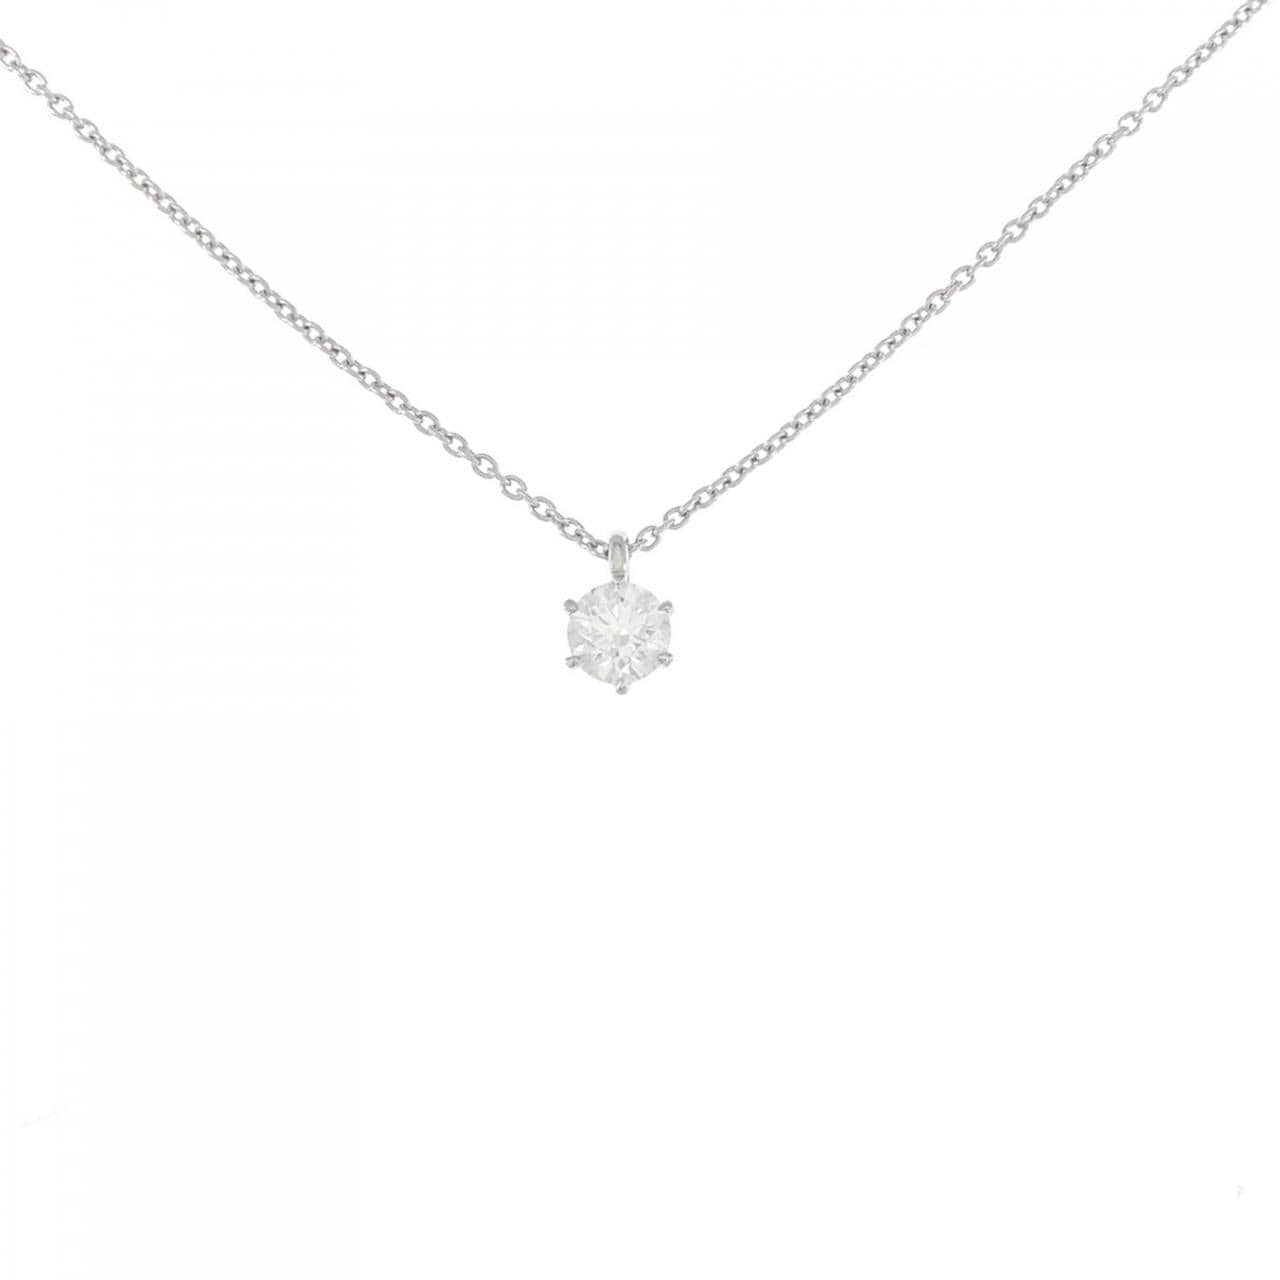 [Remake] PT Diamond Necklace 0.217CT G VVS2 3EXT H&amp;C